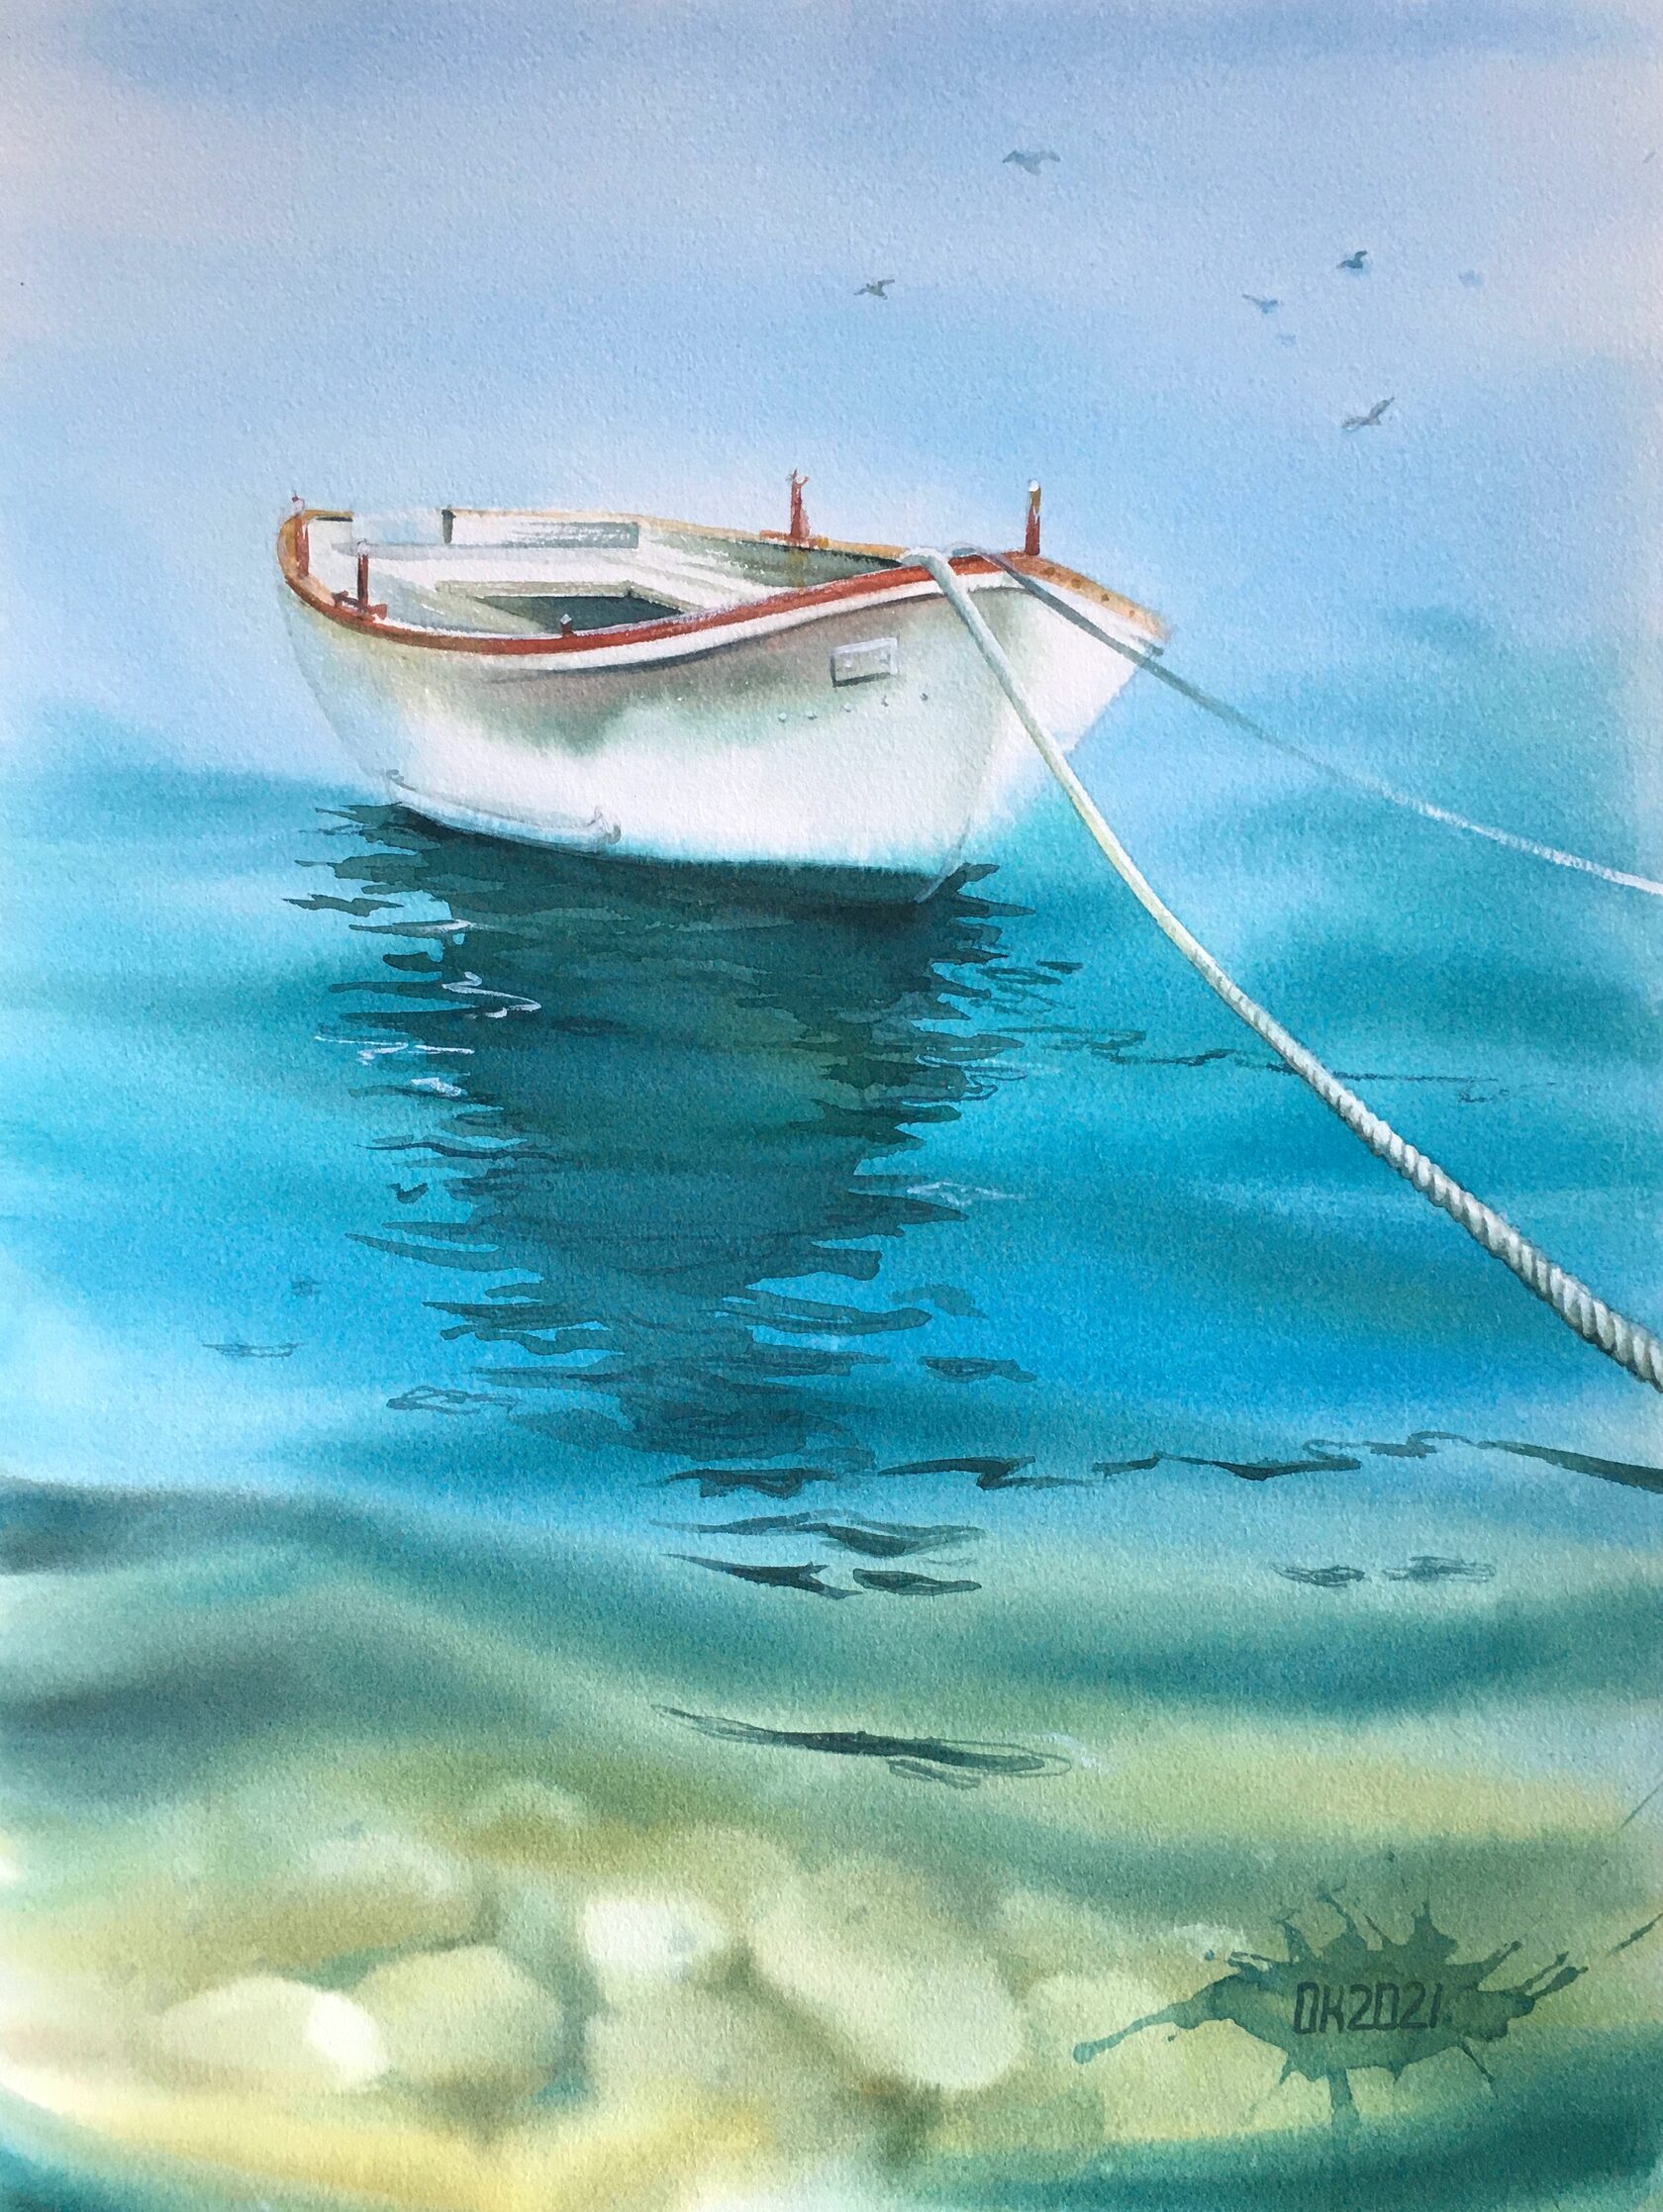 Boat at Sea